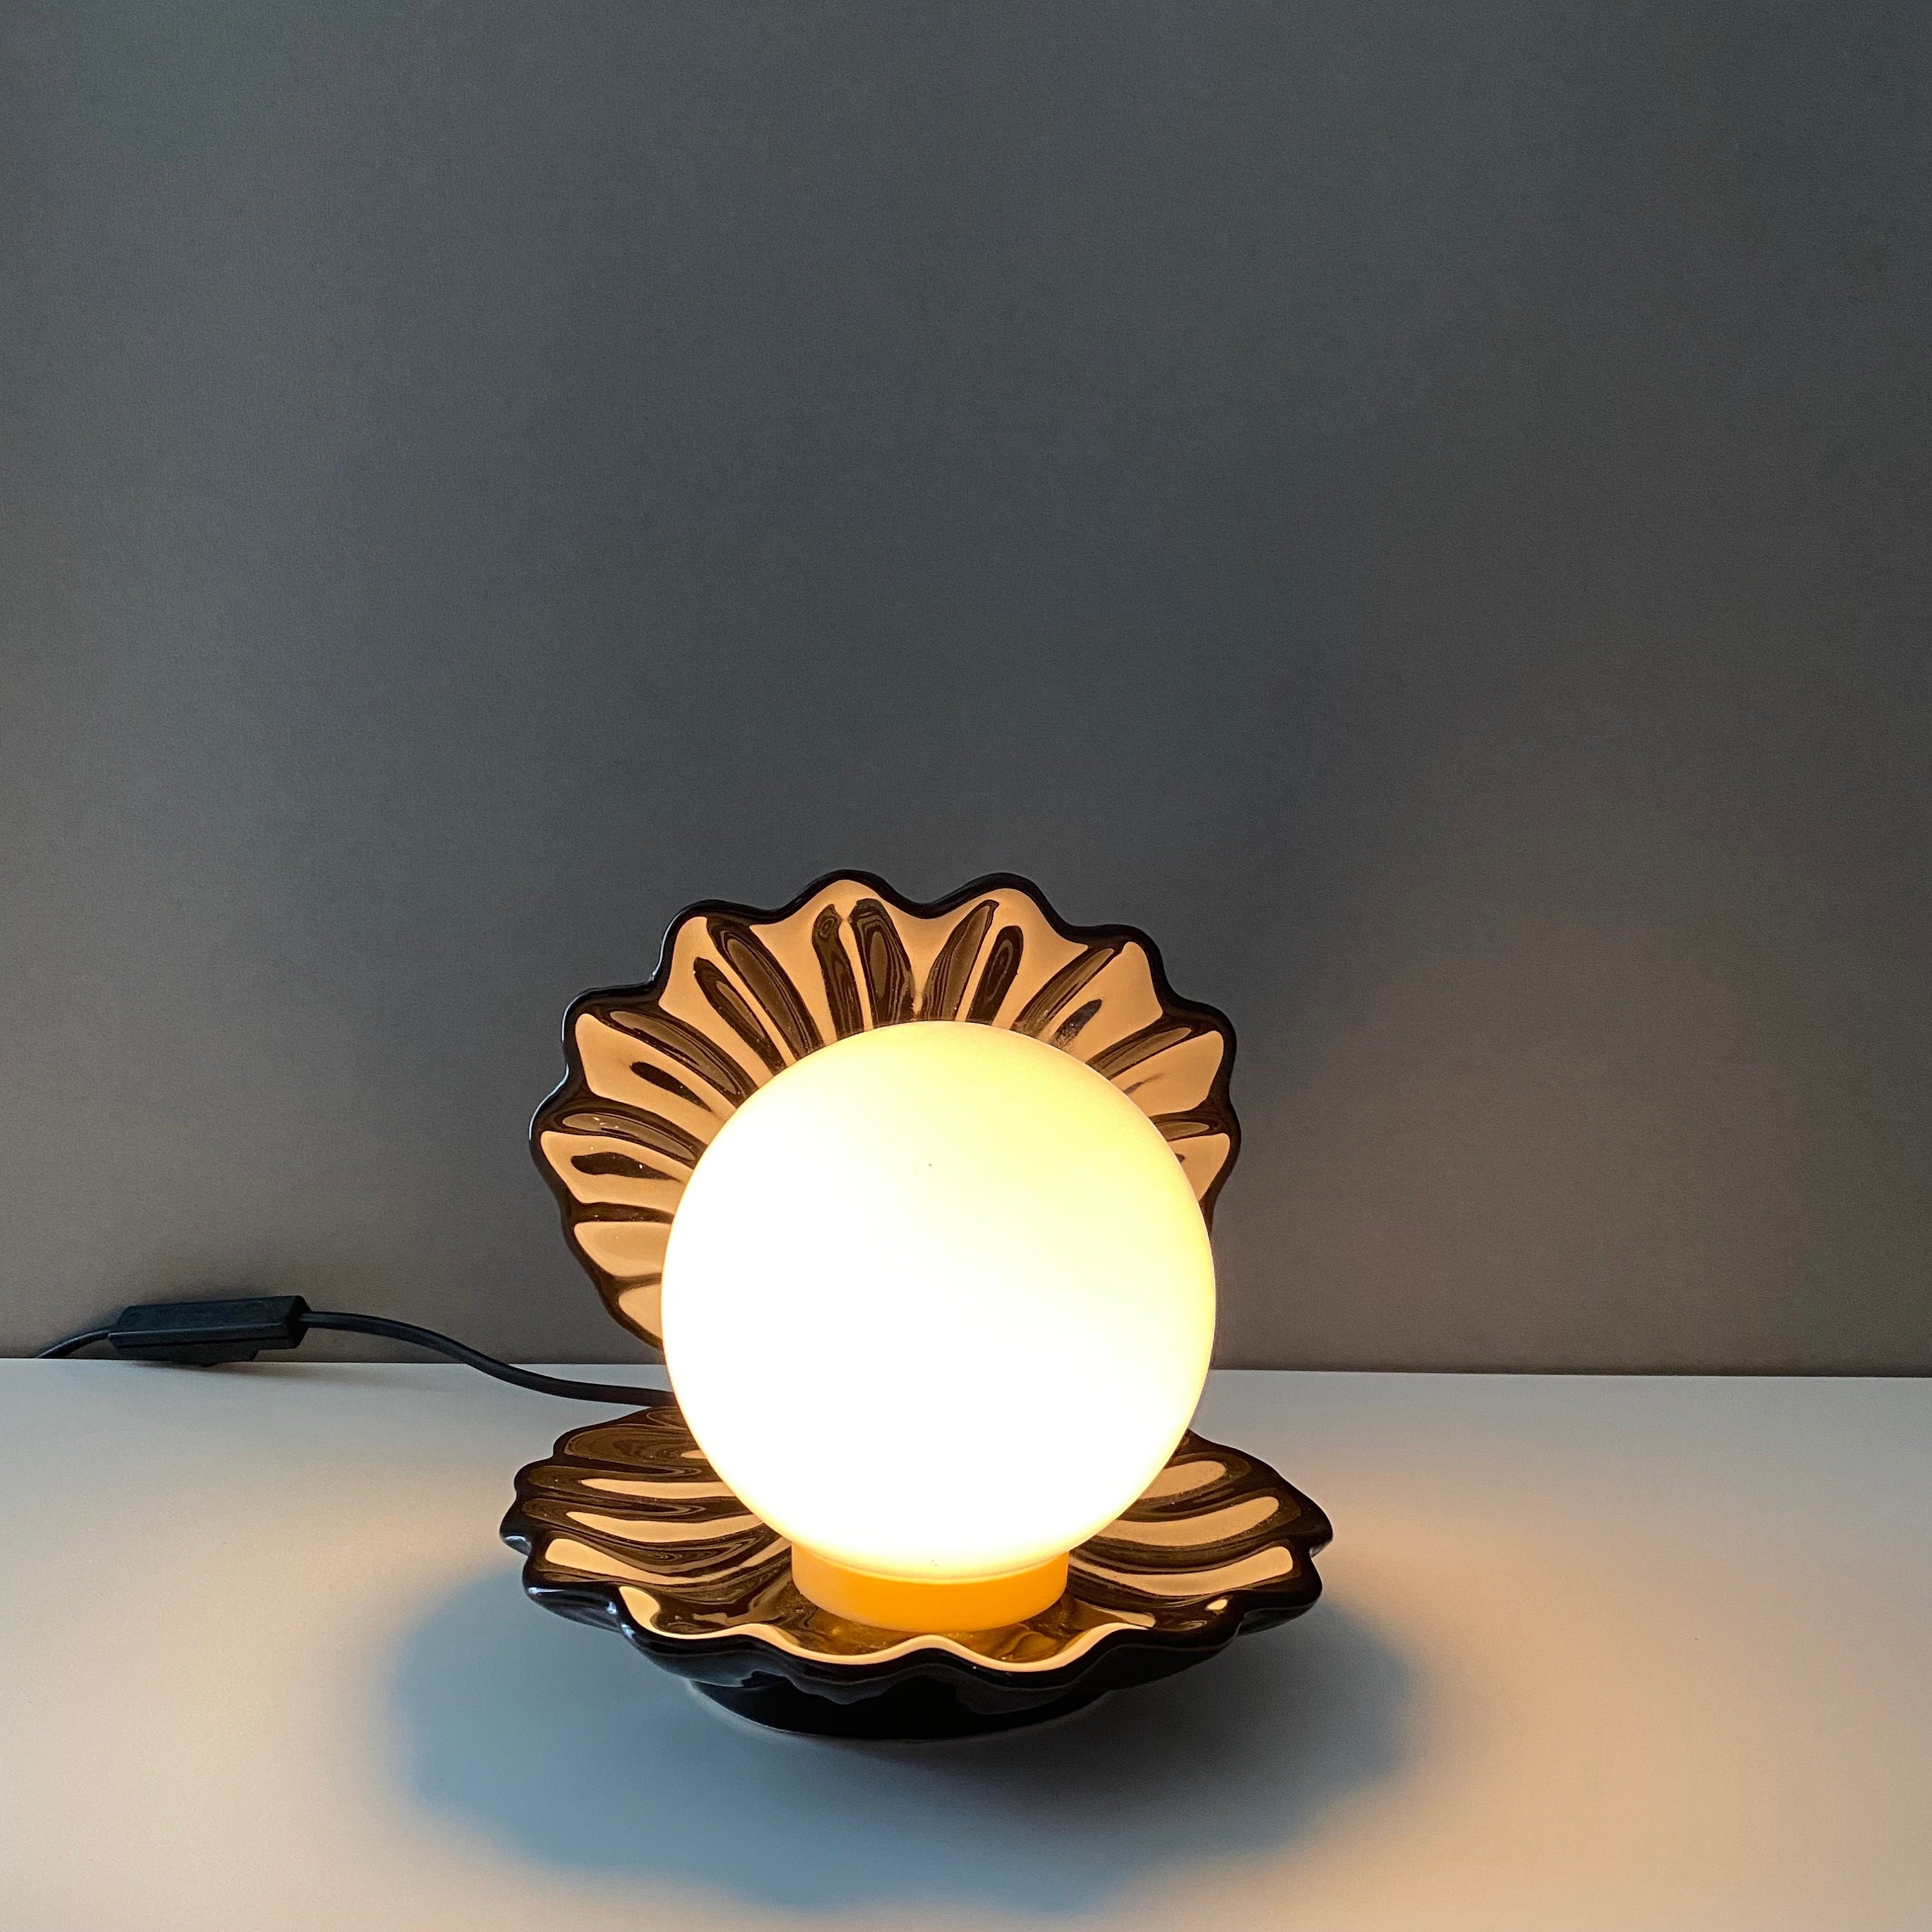 Deko-Lichter & Lampen  Jetzt online kaufen bei Pearl Schweiz! - Ihr  Elektronik-Versand in der Schweiz